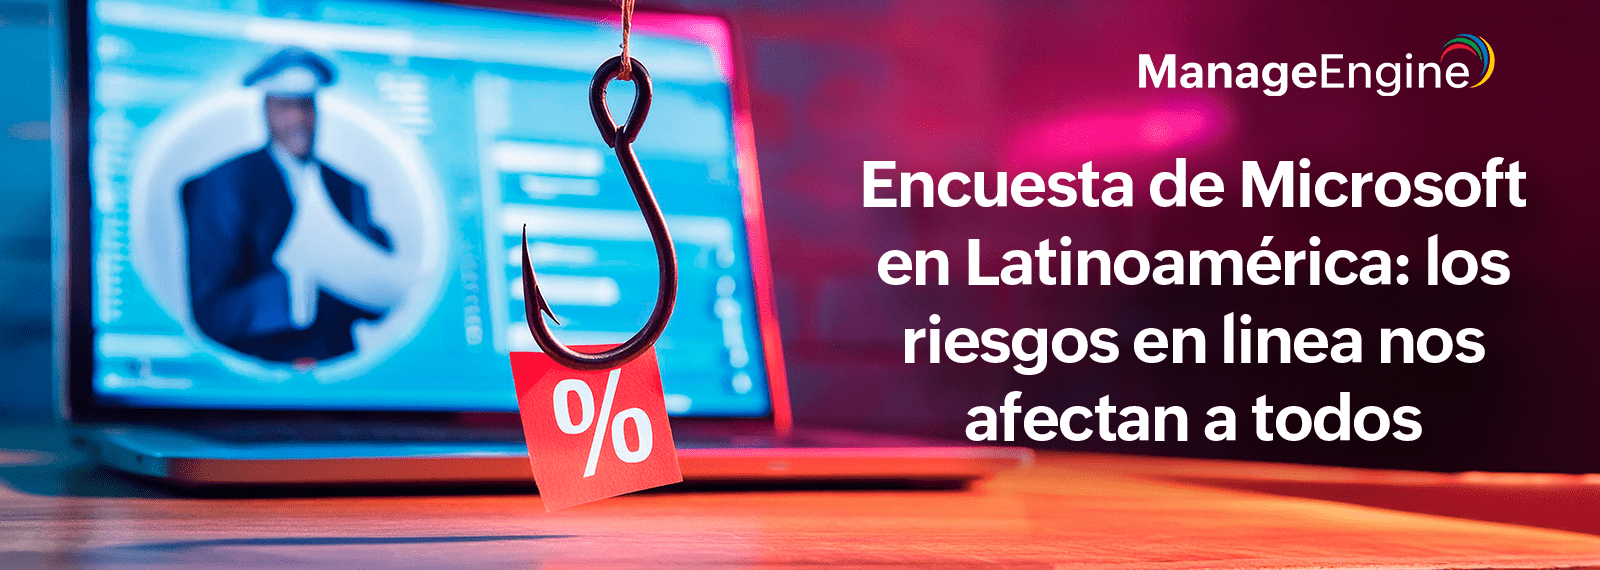 Encuesta Microsoft en Latinoamérica: los riesgos en linea nos afectan a todos